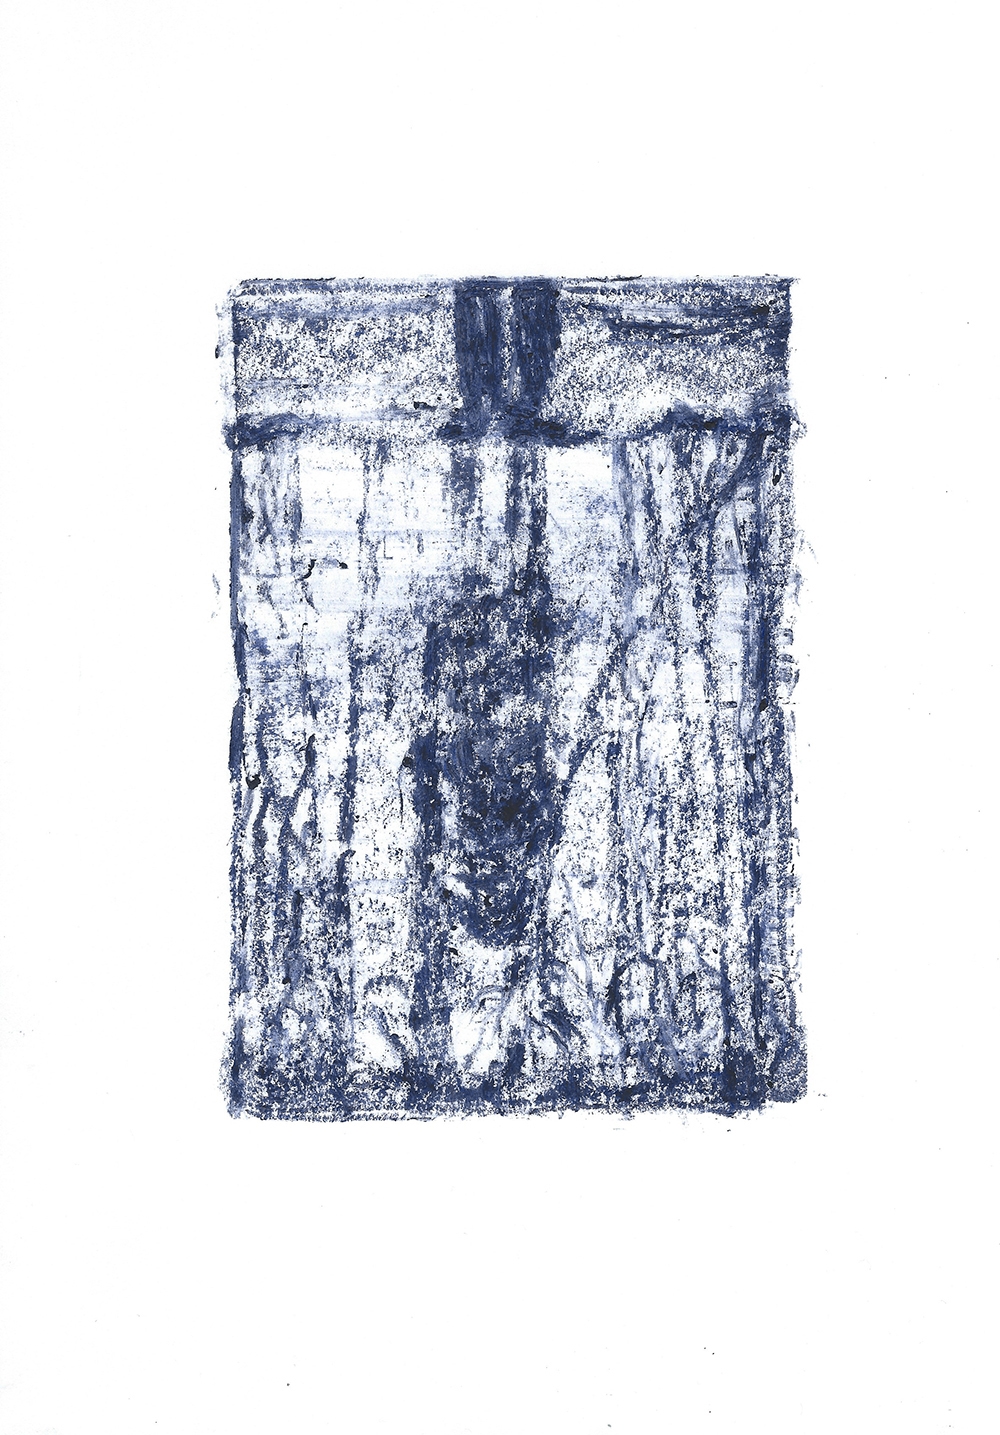 Die blaue Stunde artwork by Nina Ansari